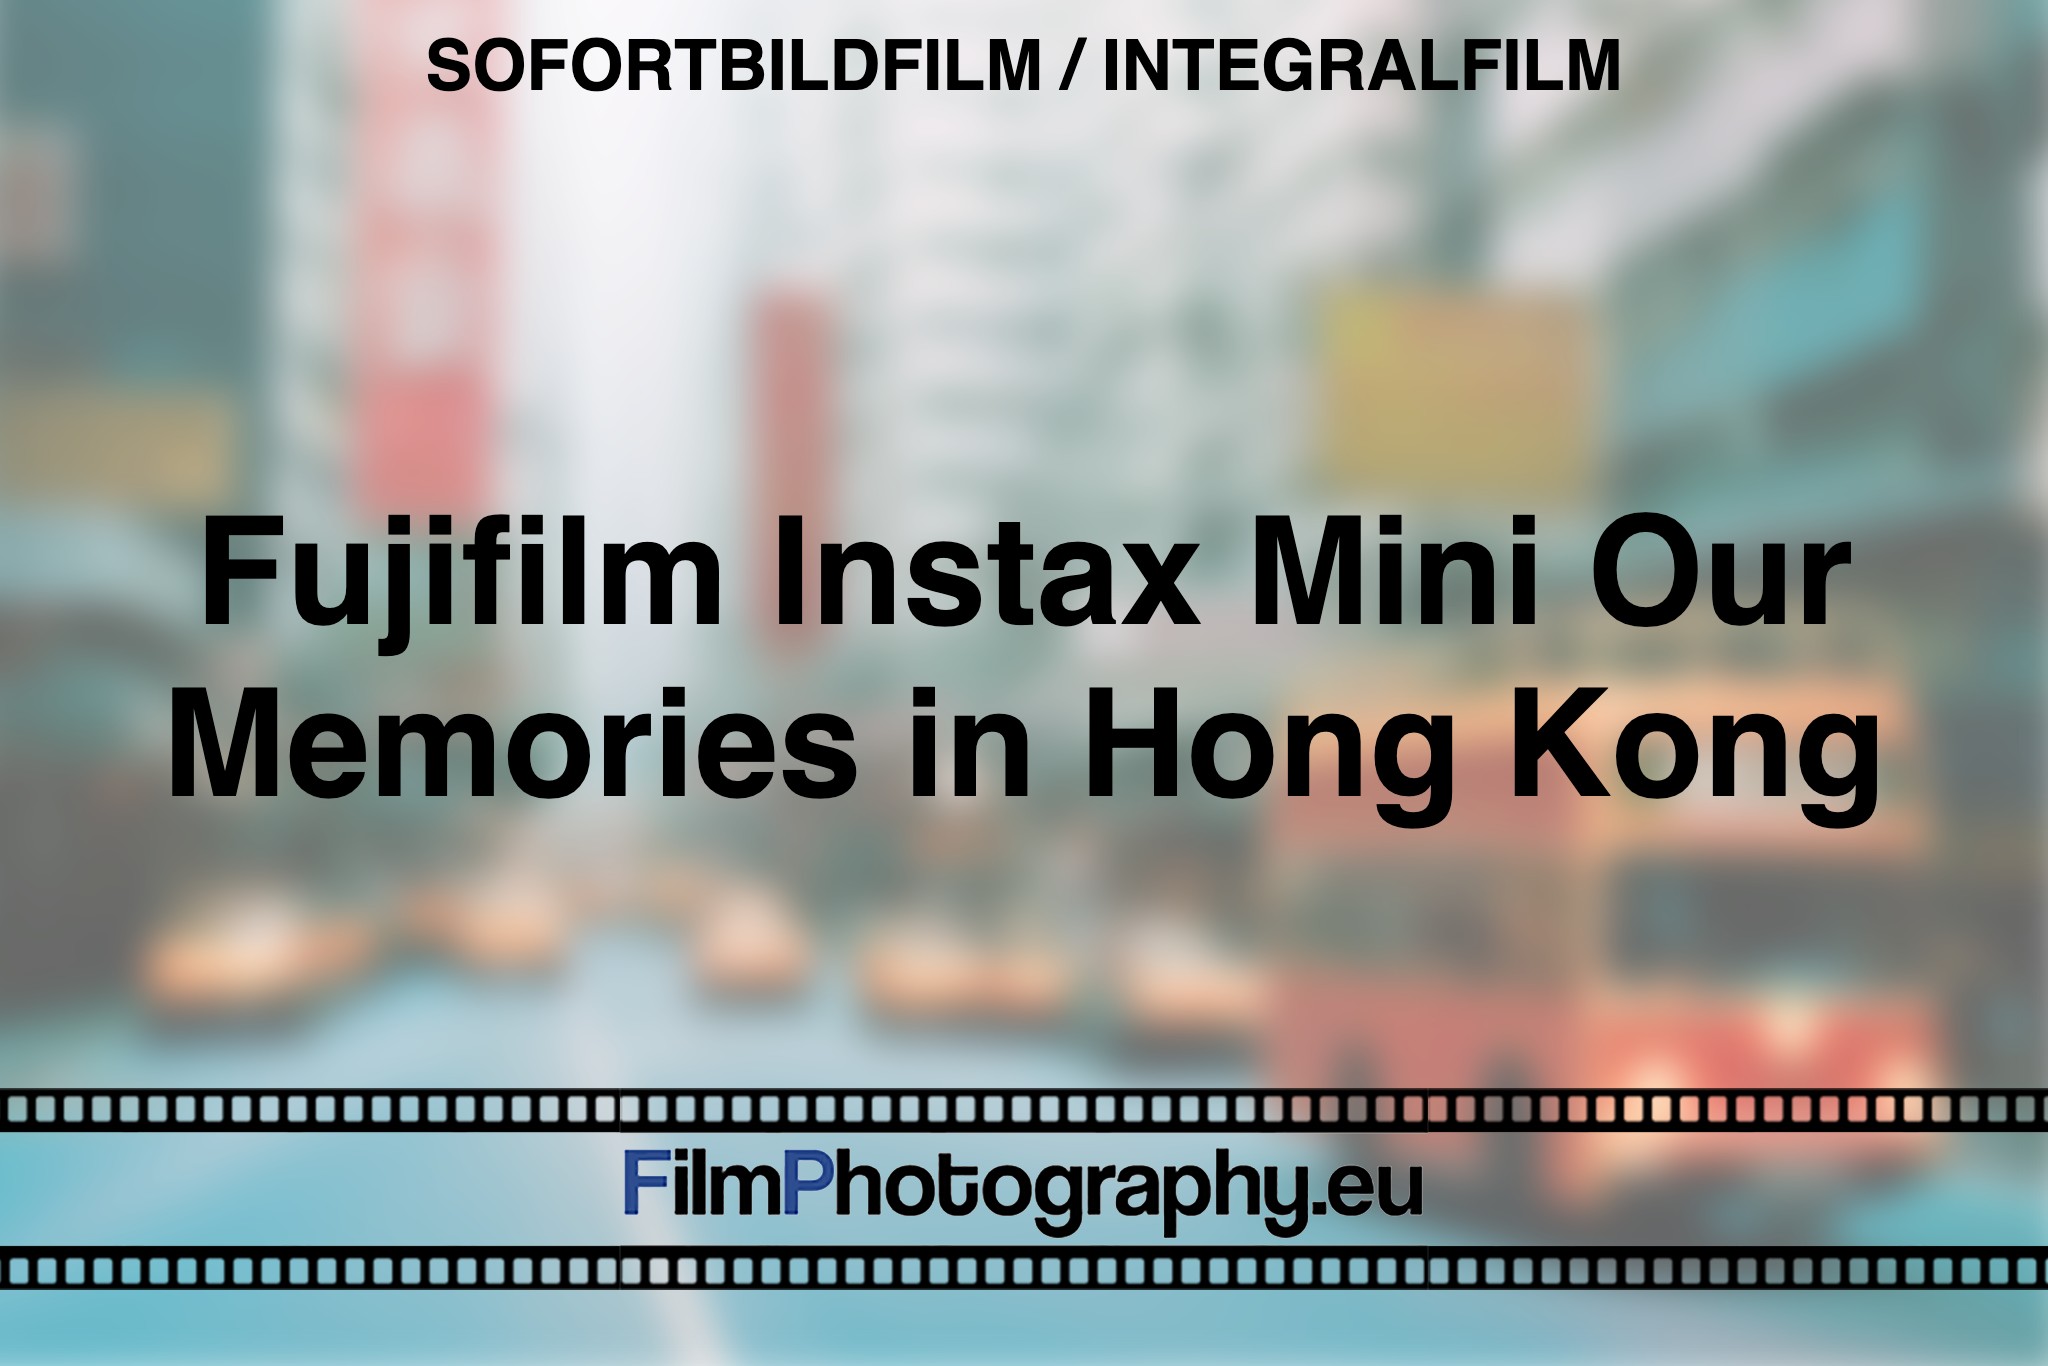 fujifilm-instax-mini-our-memories-in-hong-kong-sofortbildfilm-integralfilm-fp-bnv